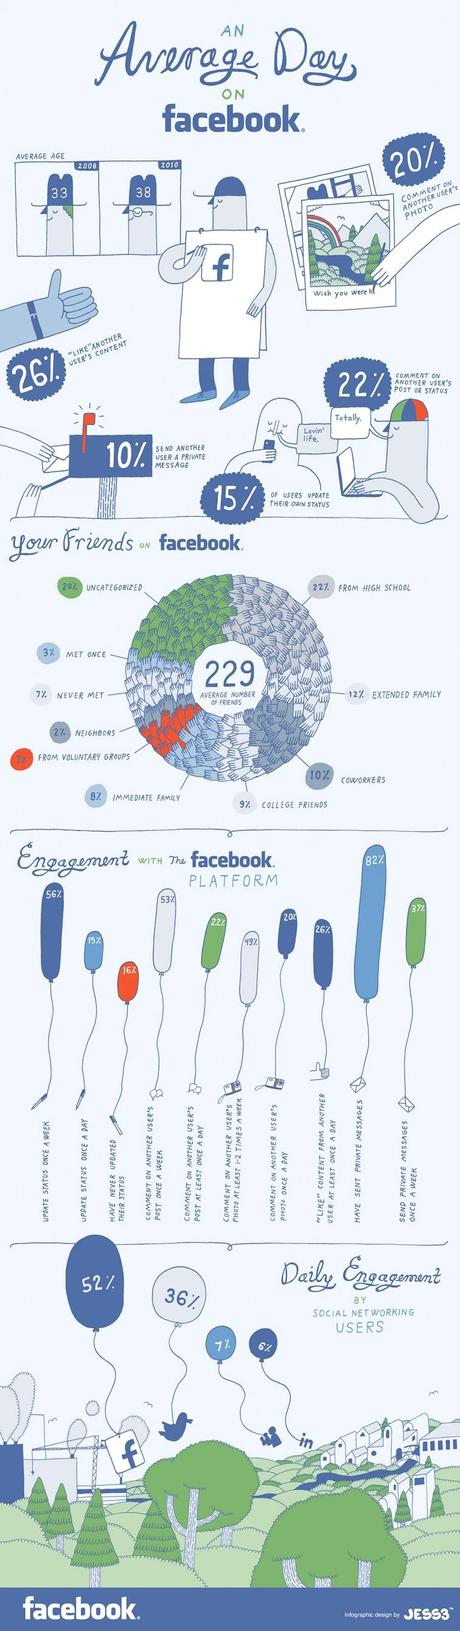 La giornata tipica su Facebook [infografica]